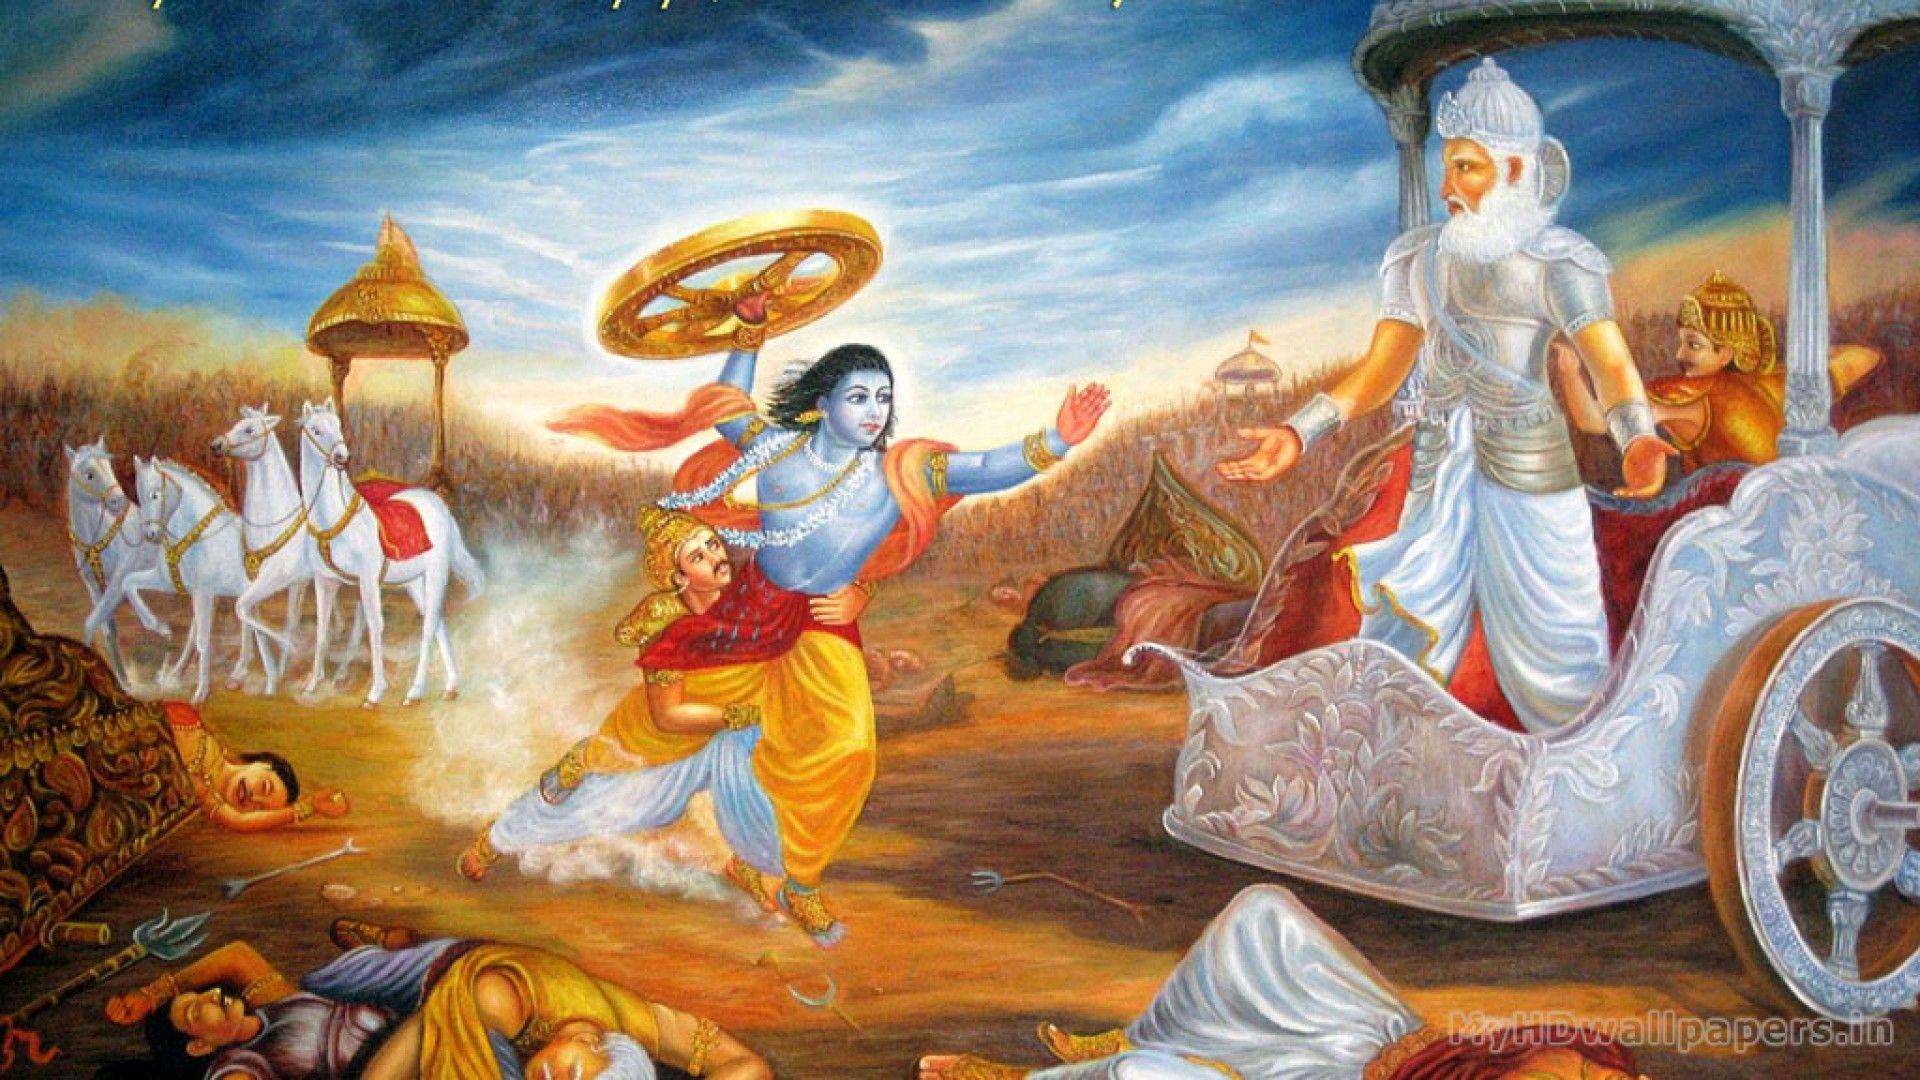 Mahabharat Arjun Shri Krishna - 1920x1080 Wallpaper 